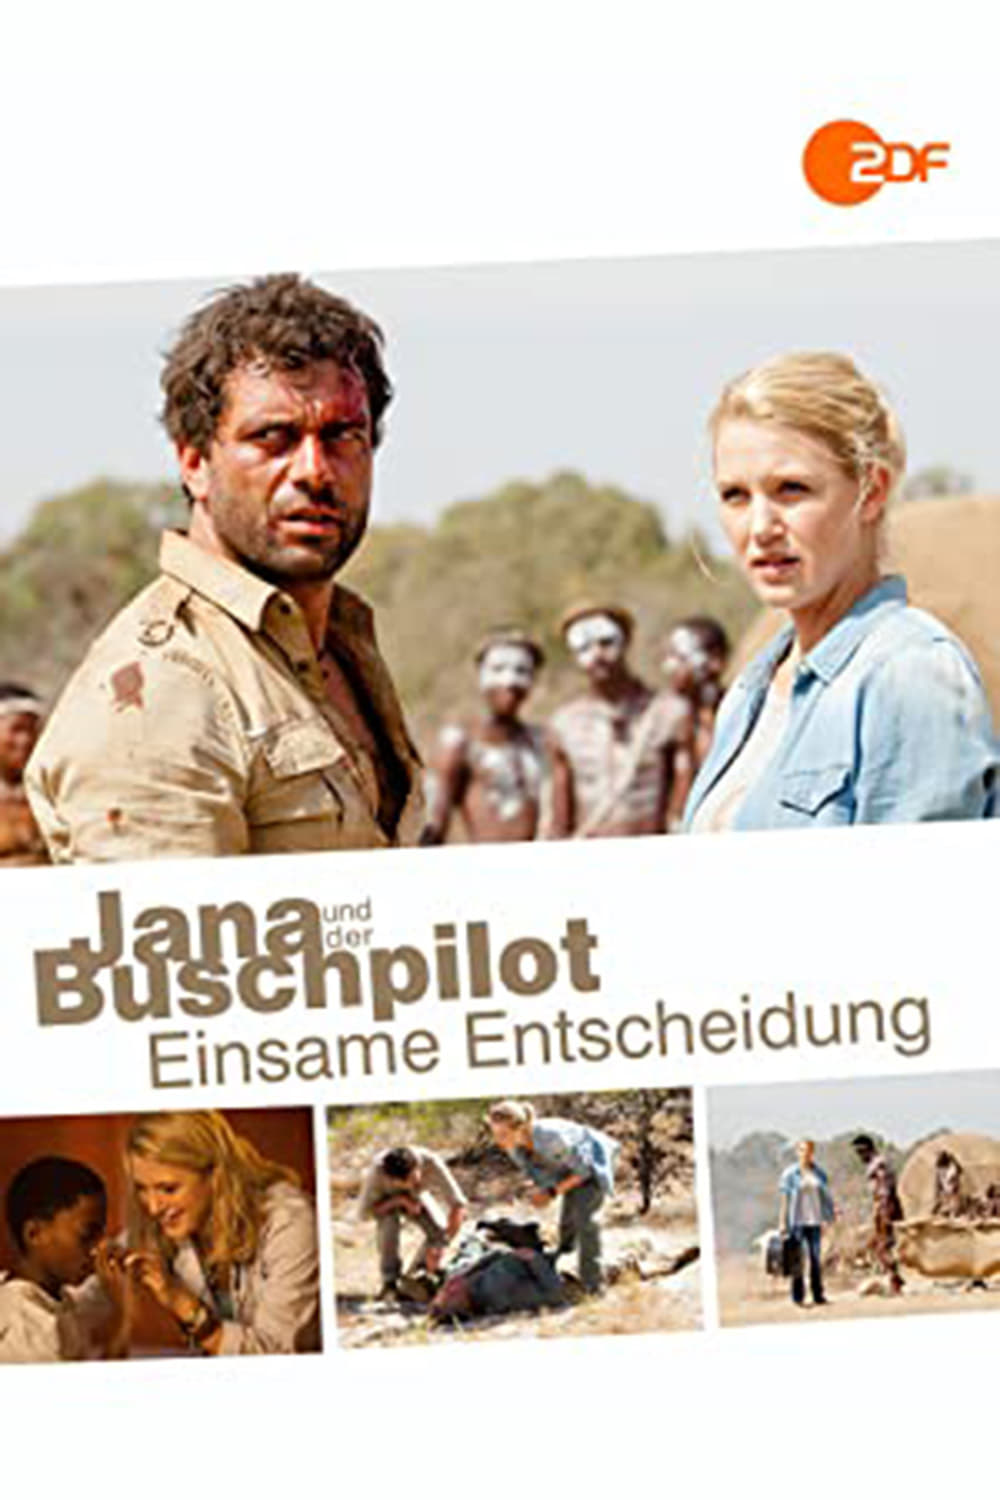 Jana und der Buschpilot - Einsame Entscheidung (2015)